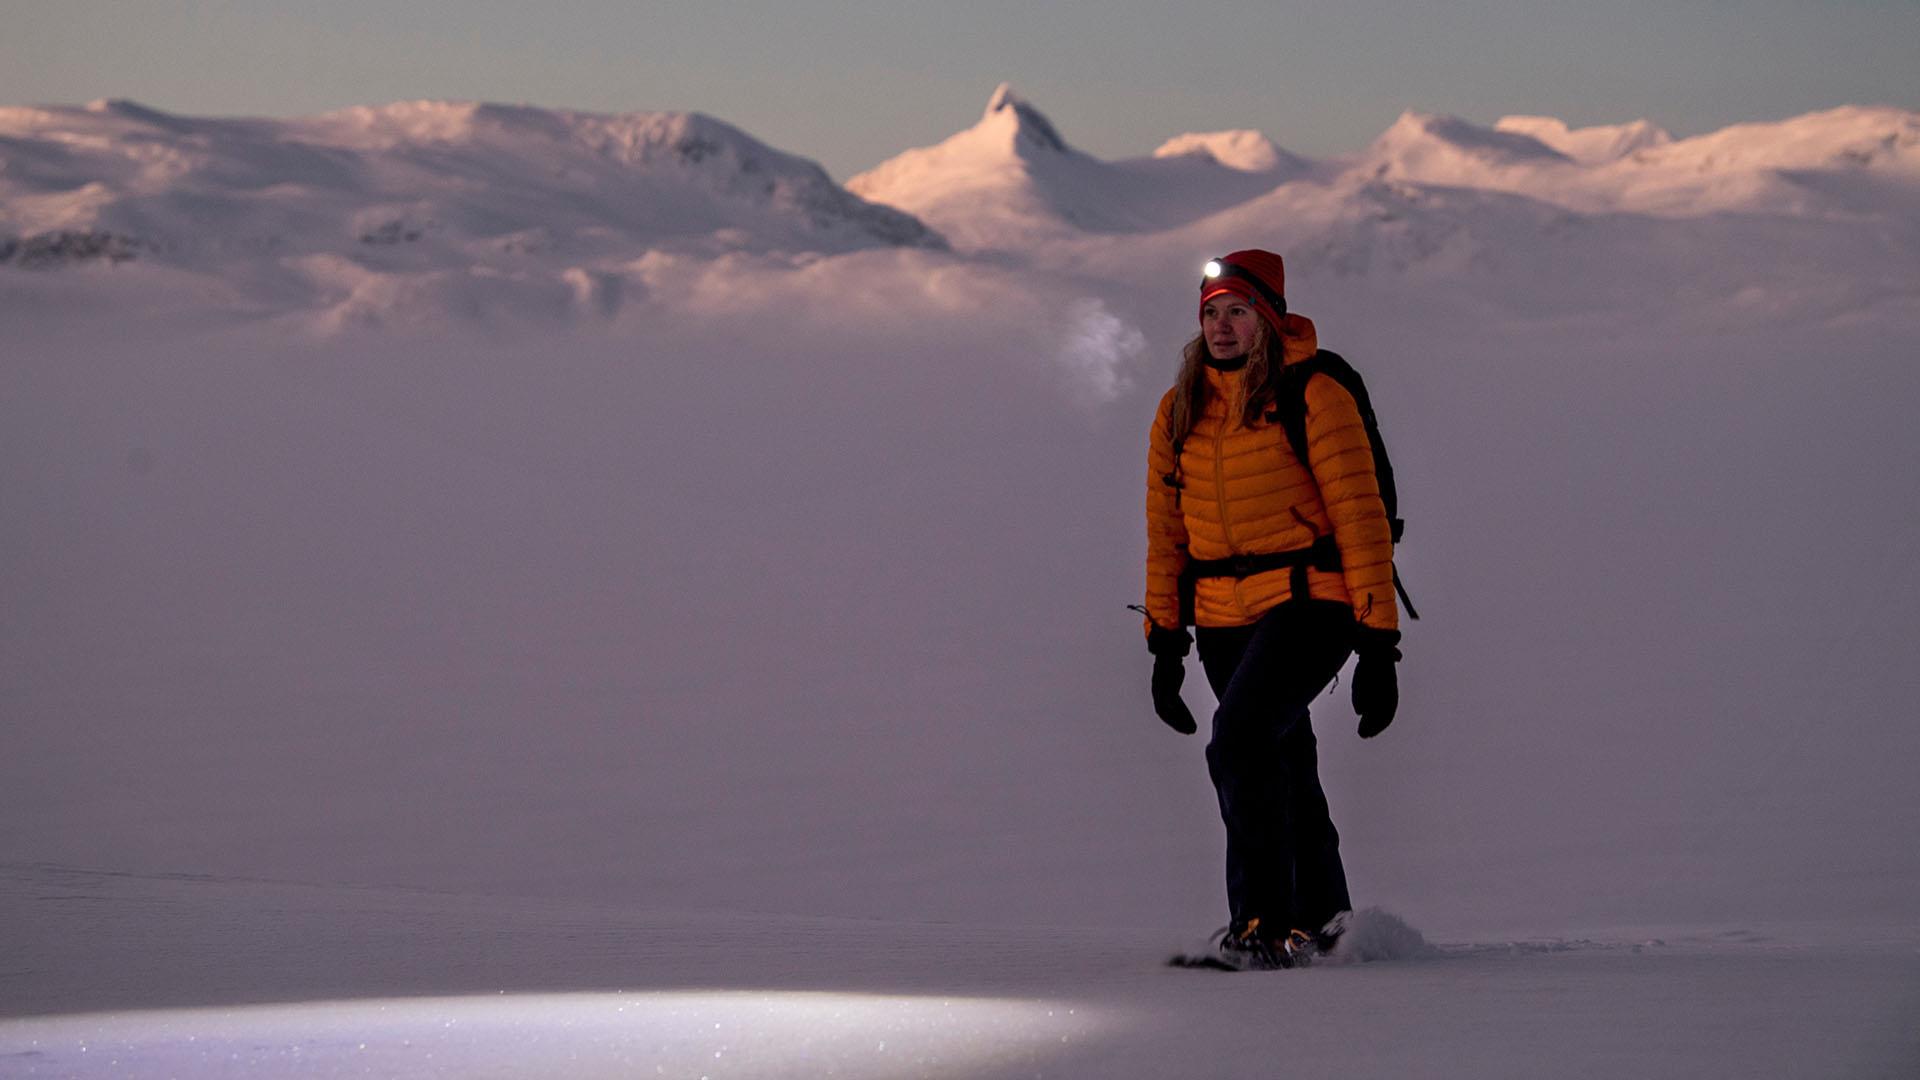 Eine Frau in Winterkleidung und mit Kopflampe geht auf Schneeschuhen in der Dämmerung im Gebirge wandern. Im Hintergrund erheben sich hohe, spitze Berge.